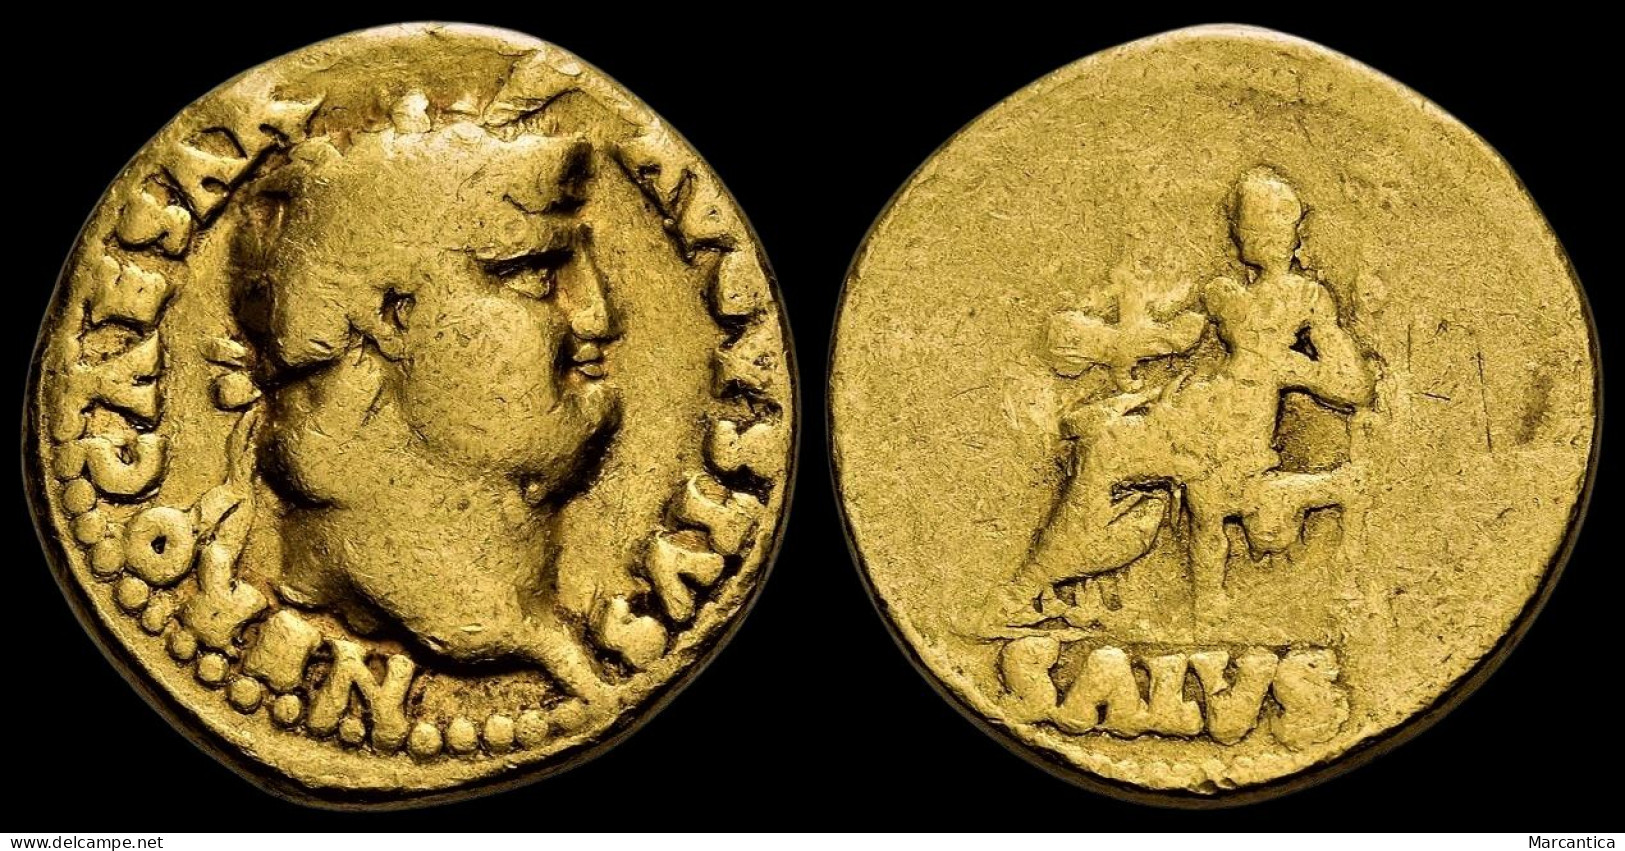 NERO. AD 54-68. AV Aureus. Rome Mint. Circa AD 66-67. - Les Julio-Claudiens (-27 à 69)